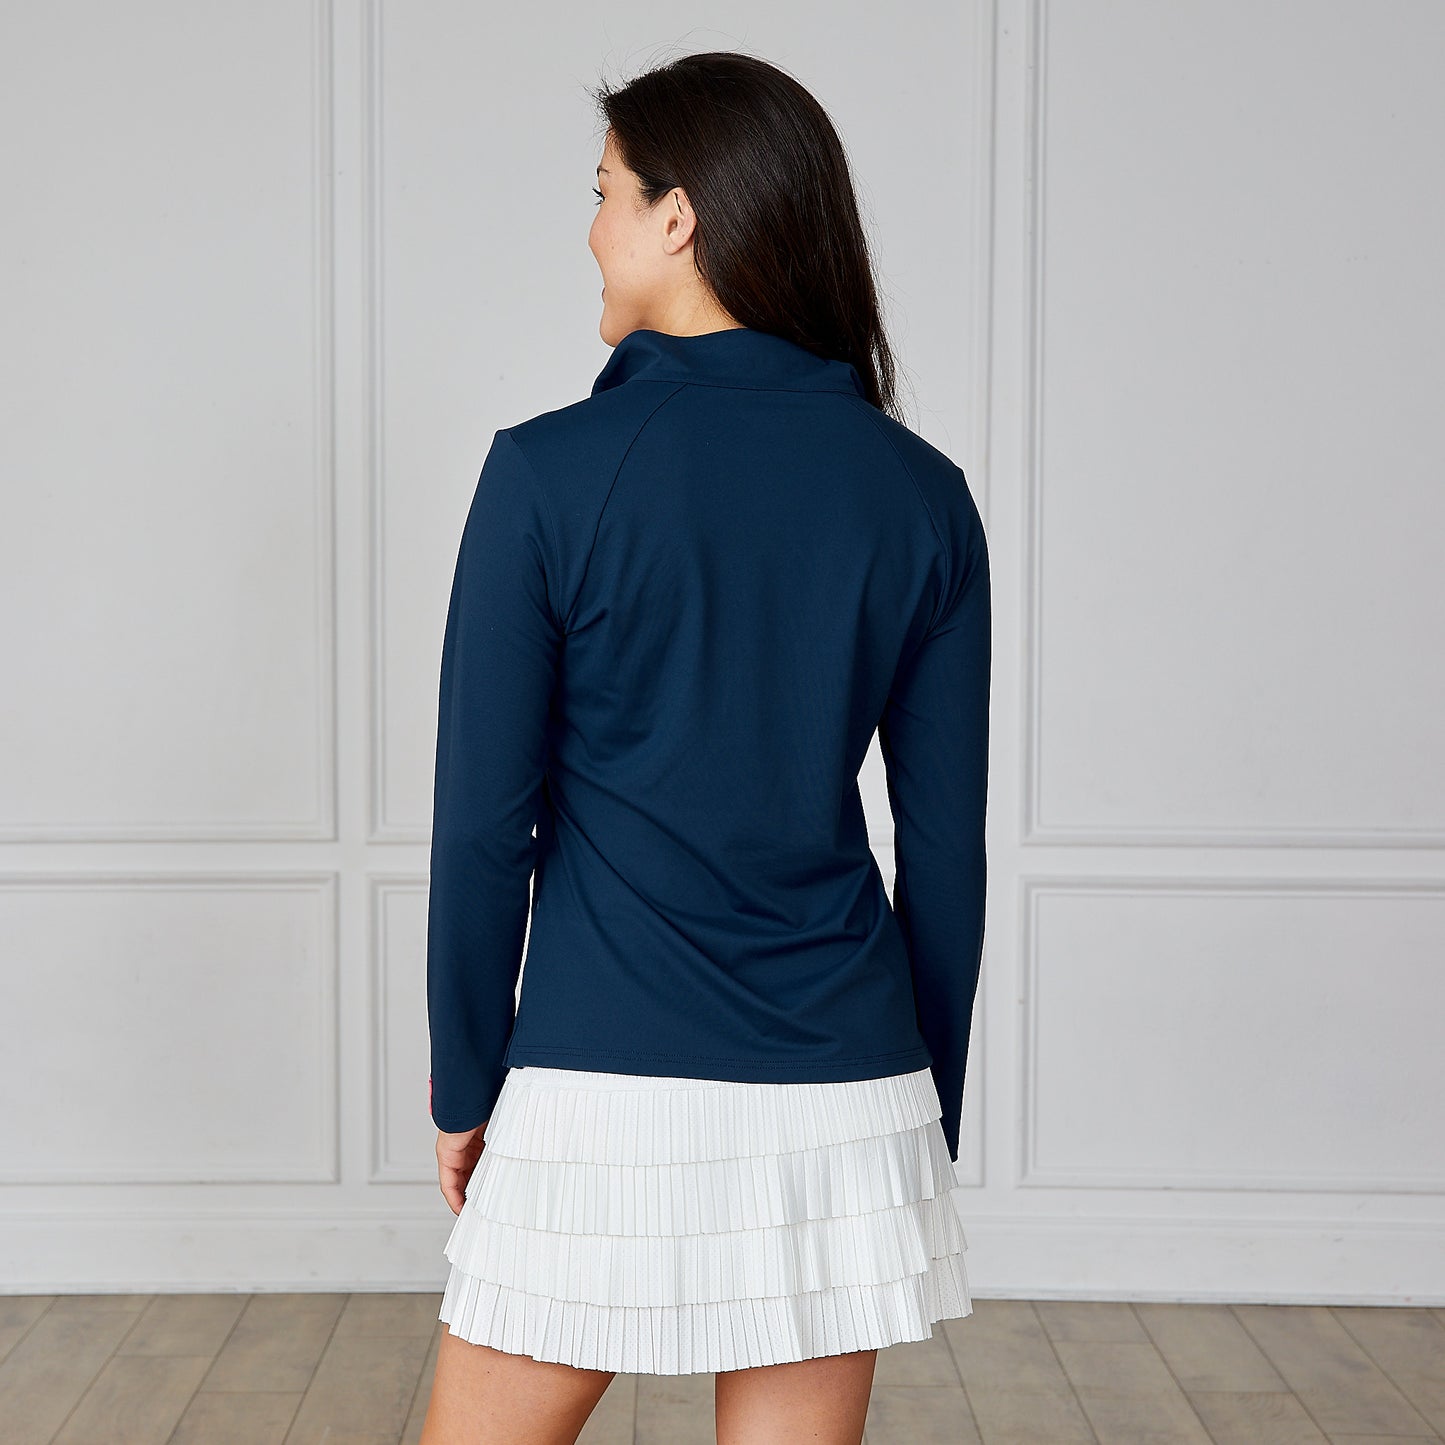 Women's 1/4 Zip Pullover - Navy Blue